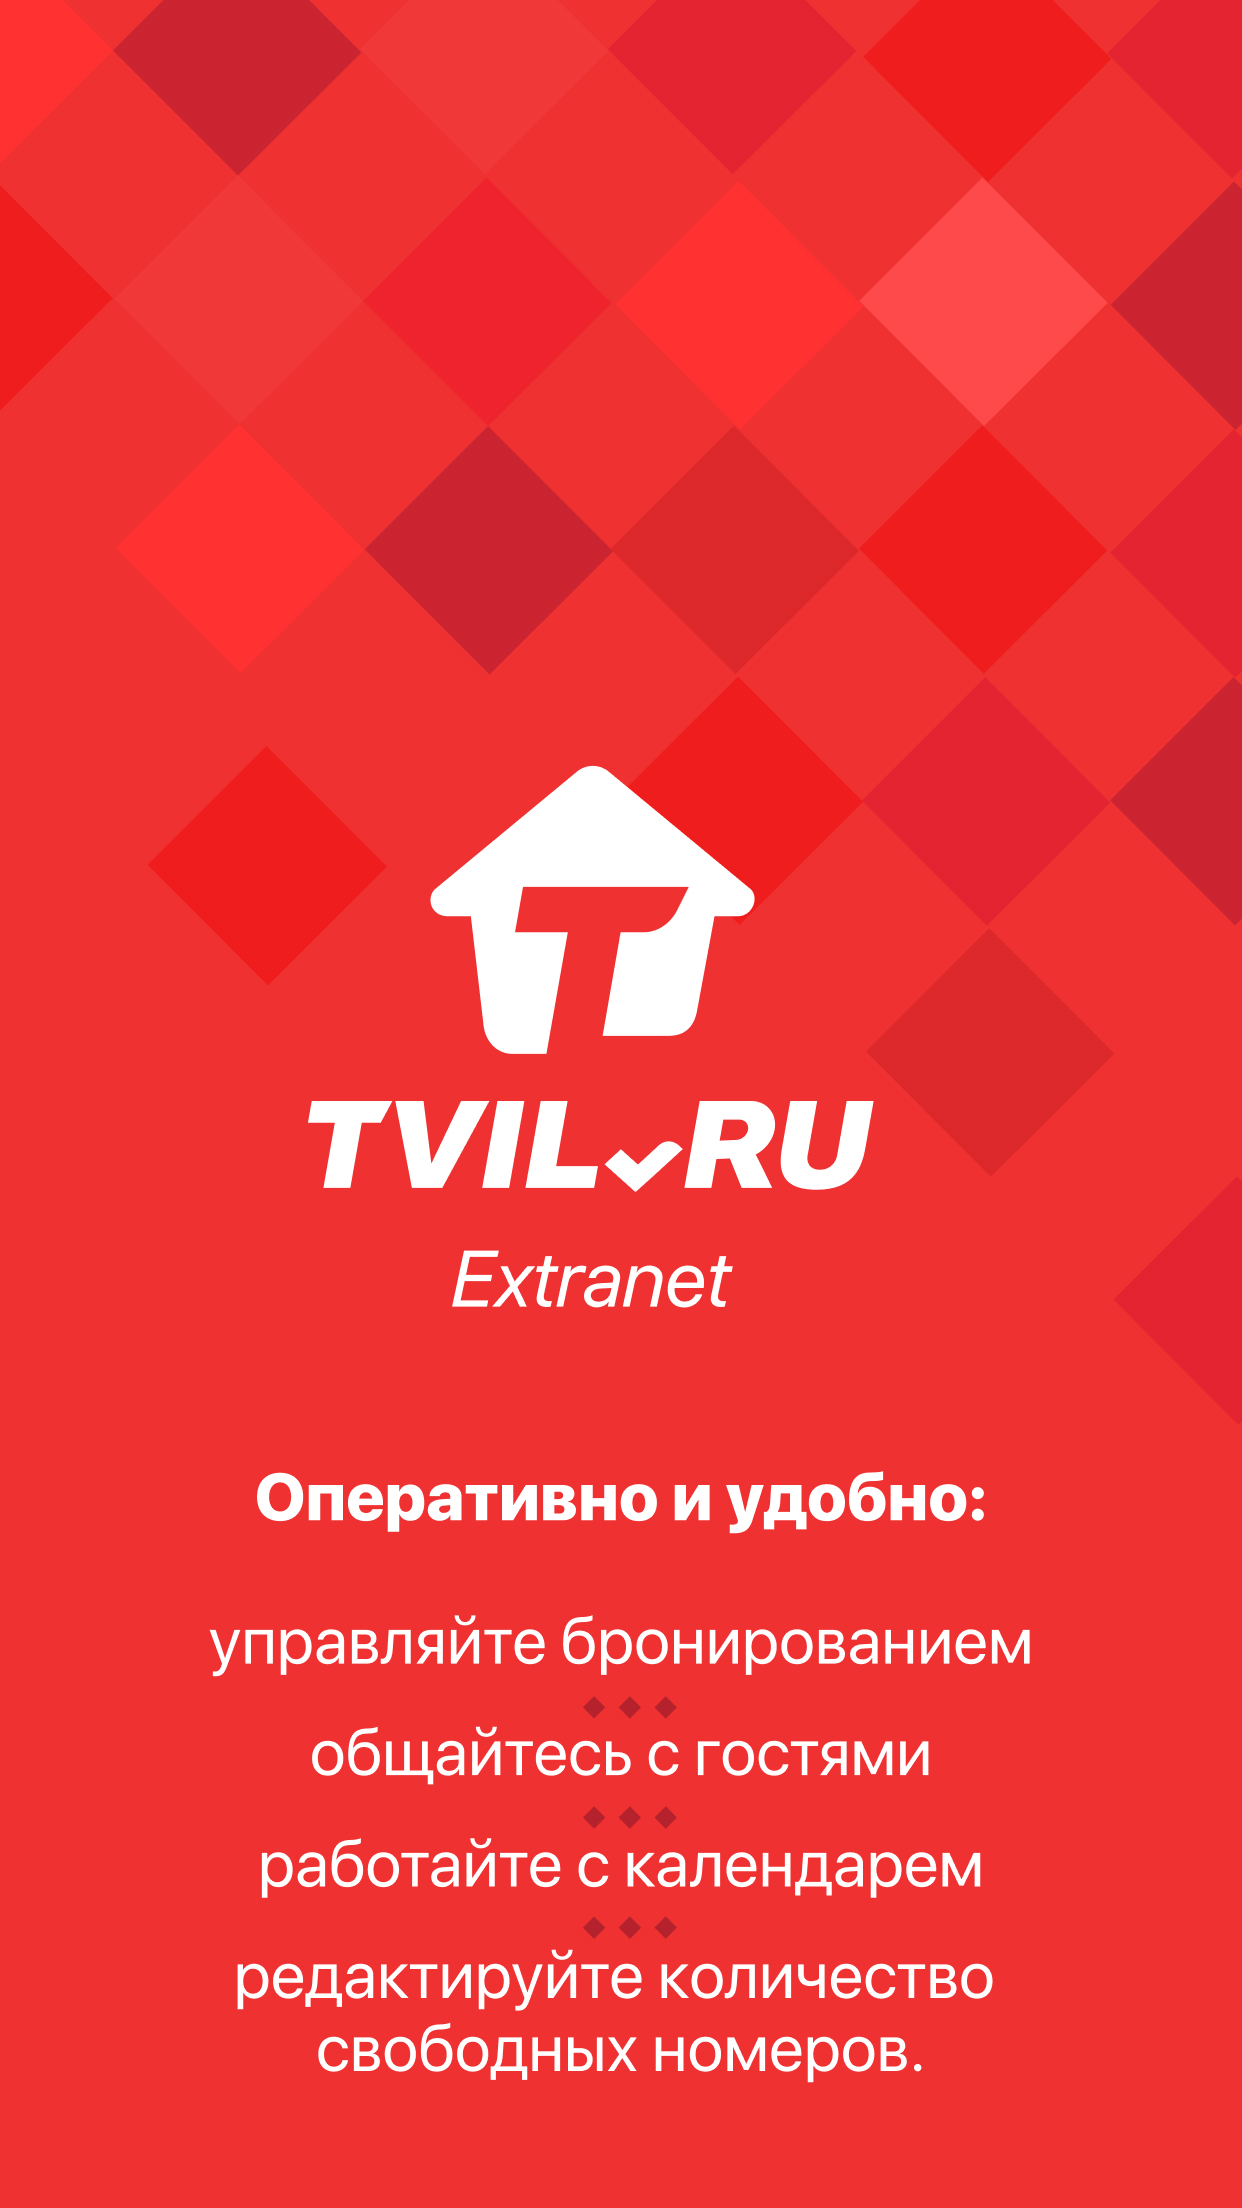 Изображение: Extranet TVIL.RU